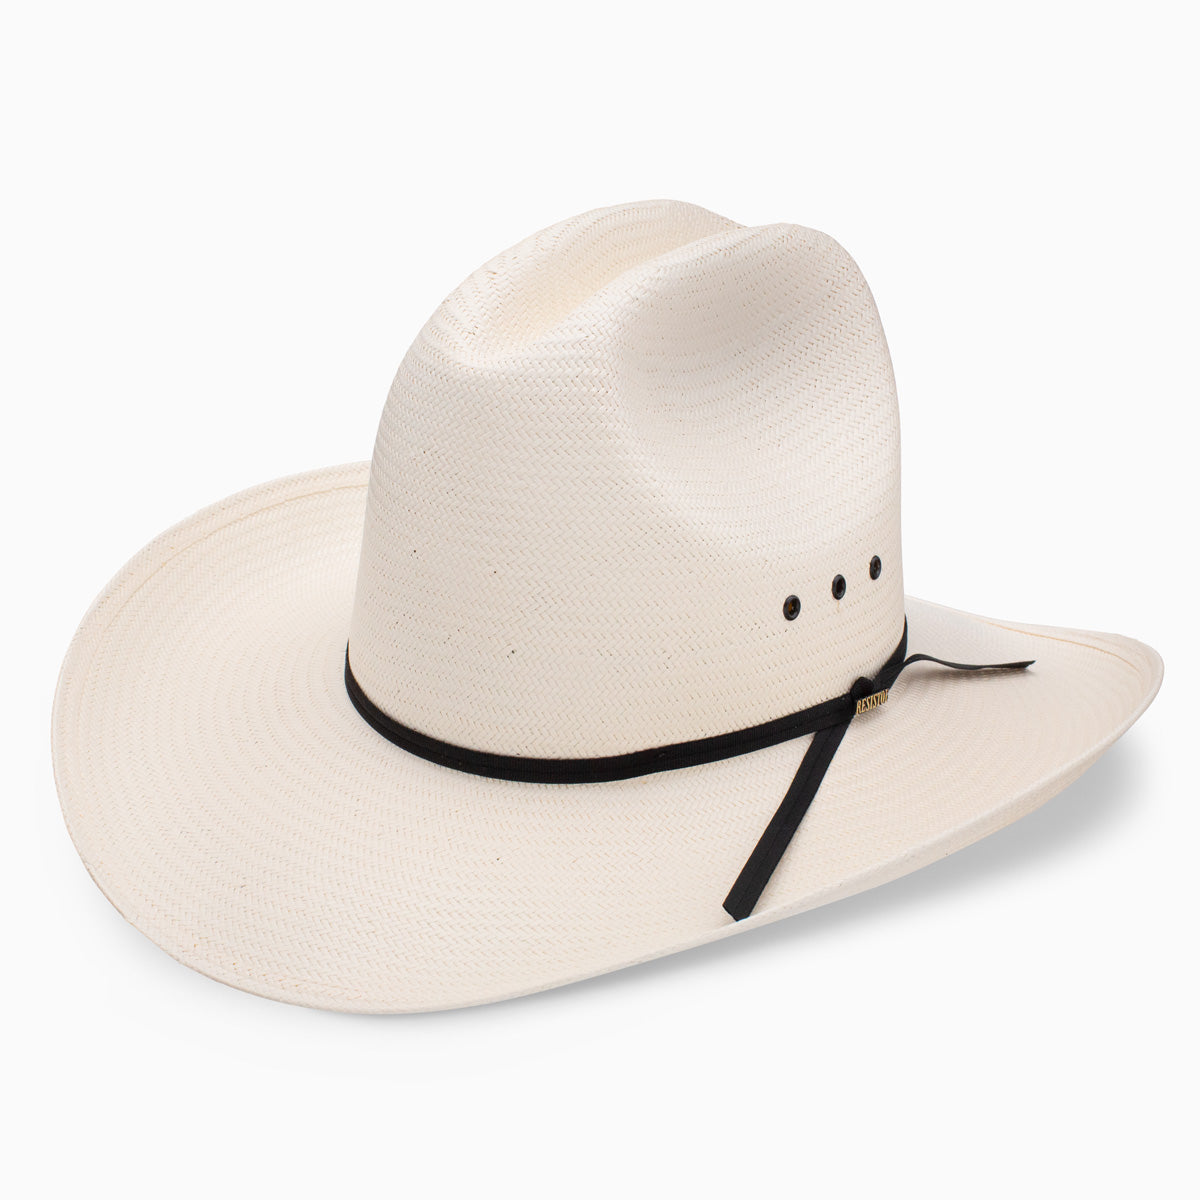 Stylish Straw Cowboy Hat